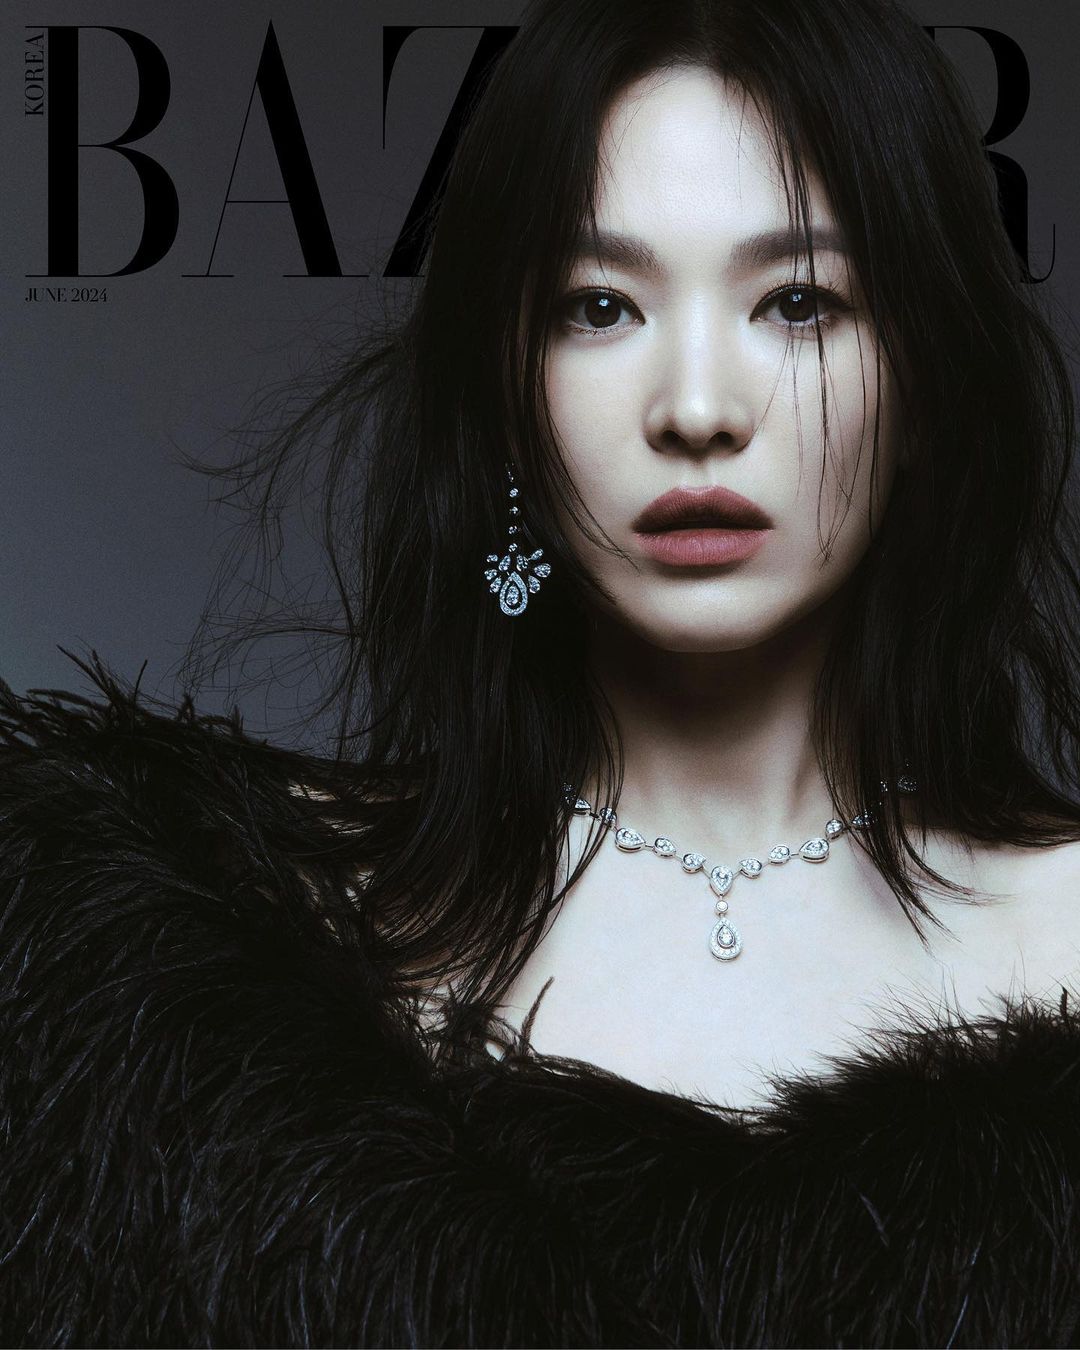 Сон Хе Гё поделилась мыслями о возрасте, своих проектах и многом другом в интервью журналу Harper’s Bazaar Korea